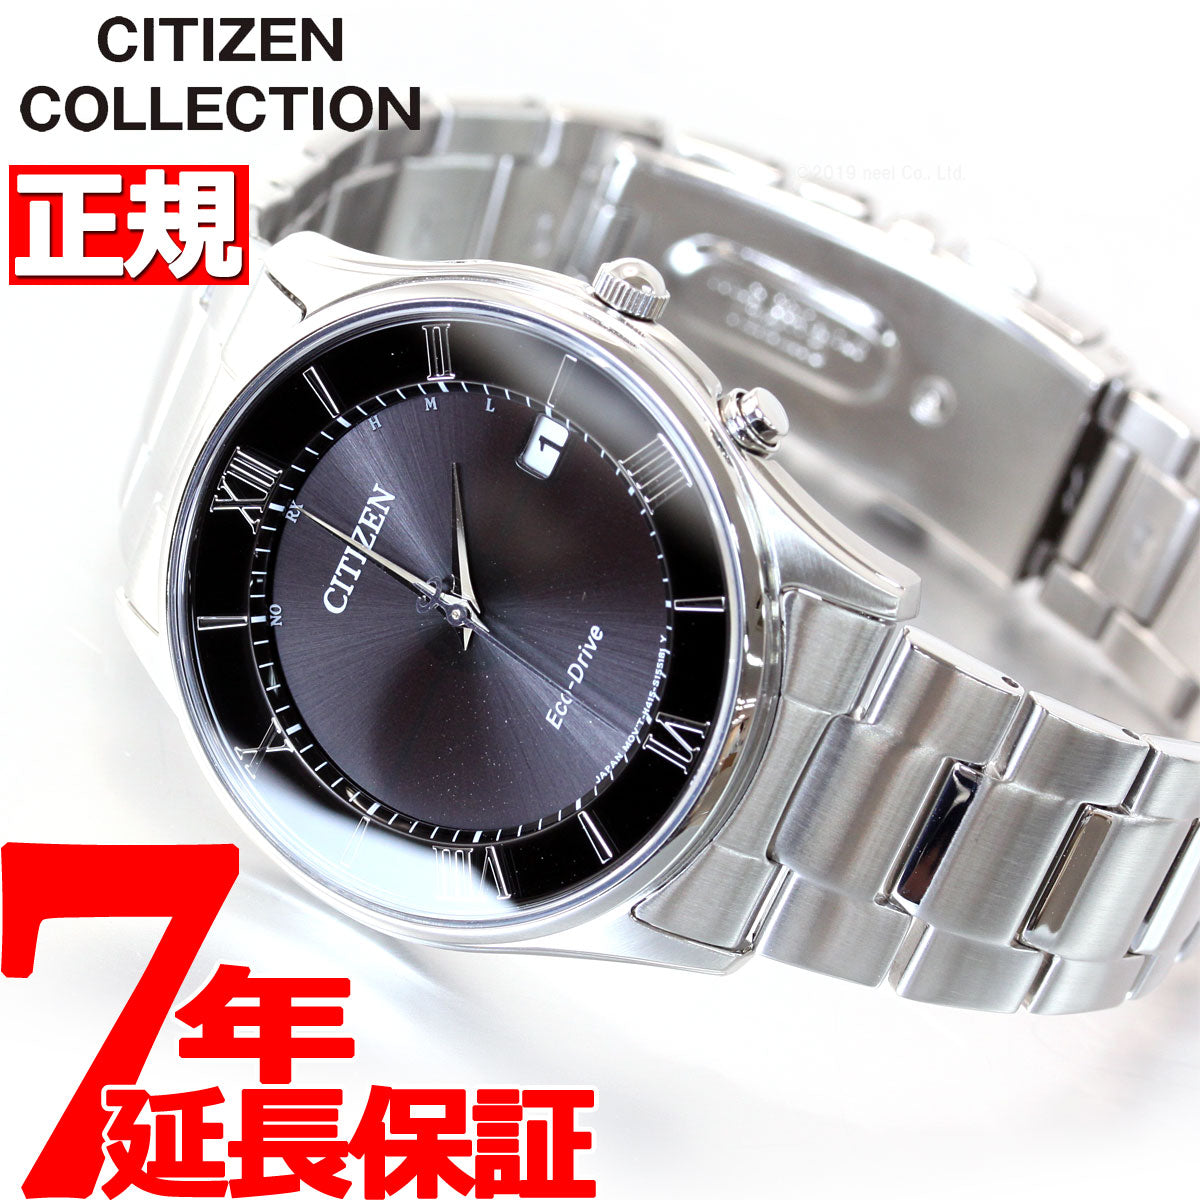 シチズンコレクション CITIZEN COLLECTION エコドライブ ソーラー 電波時計 腕時計 メンズ AS1060-54E